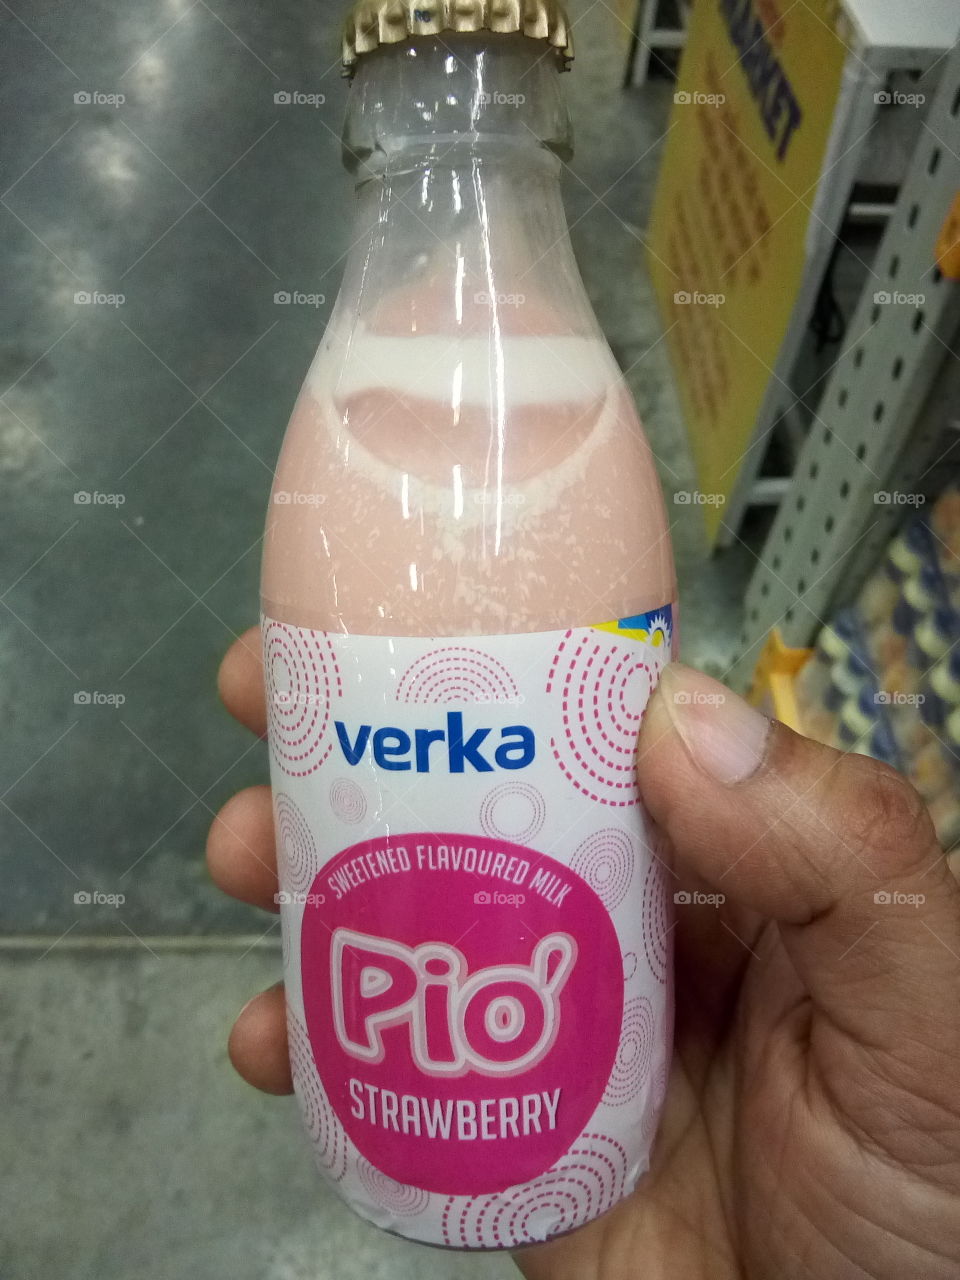 Verka rose flavored milk. Sweetened flavored milk